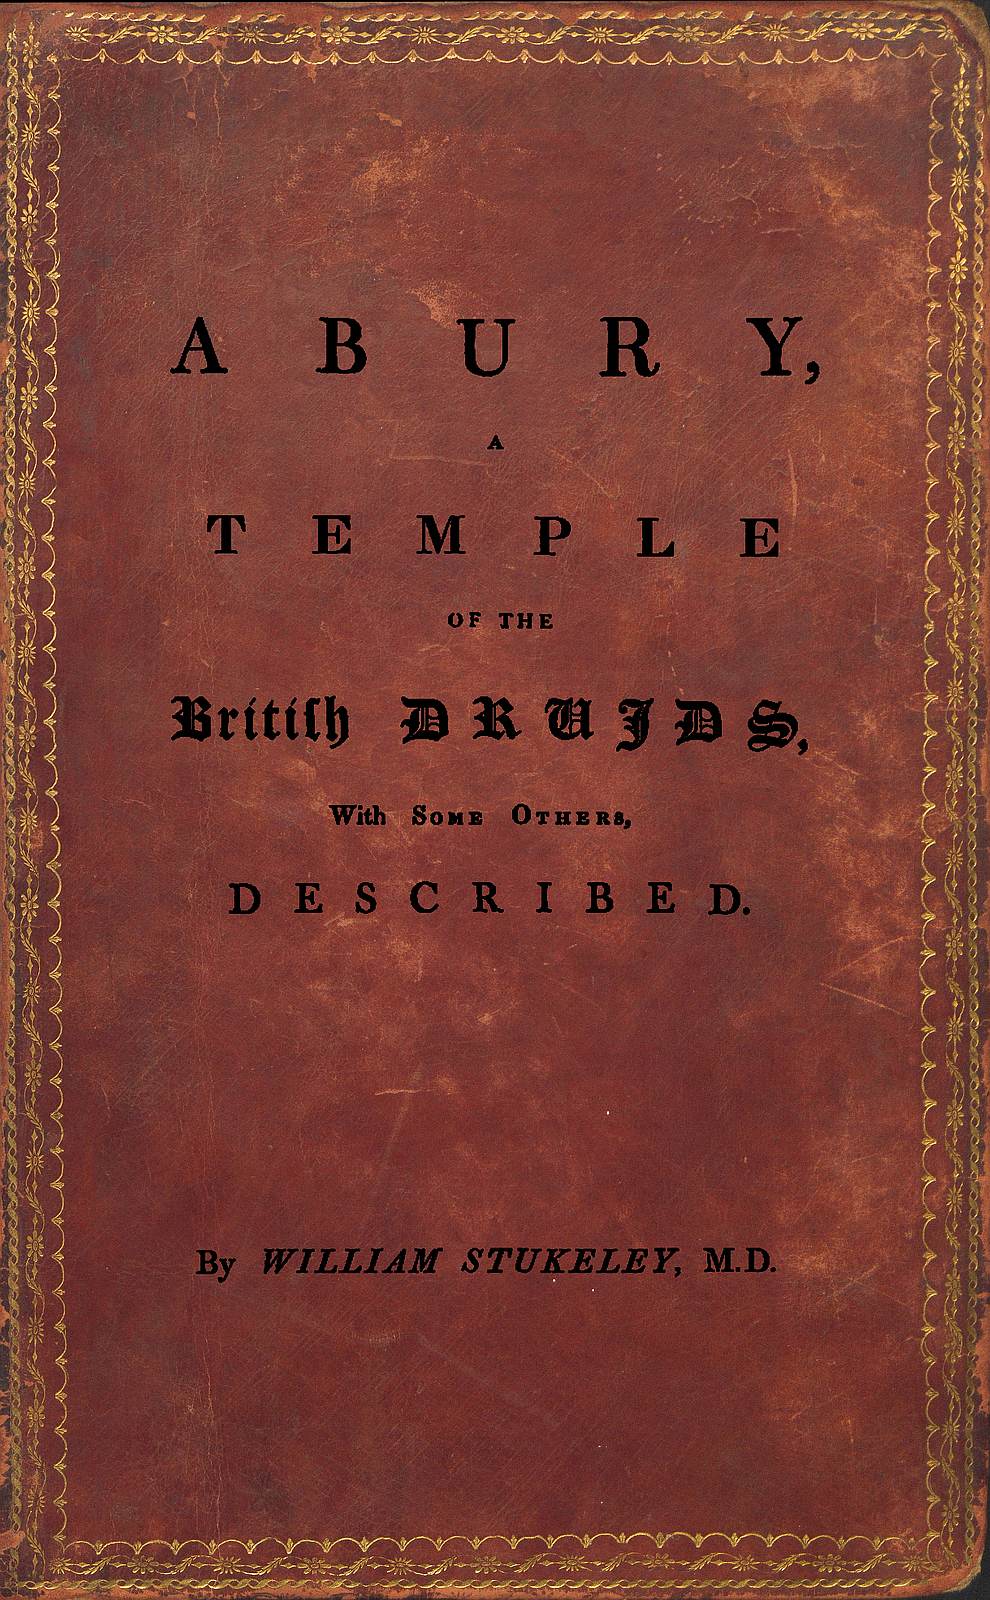 Abury, İngiliz Druidlerin Tapınağı, Diğer Bazıları ile Beraber, Tanımlanmış